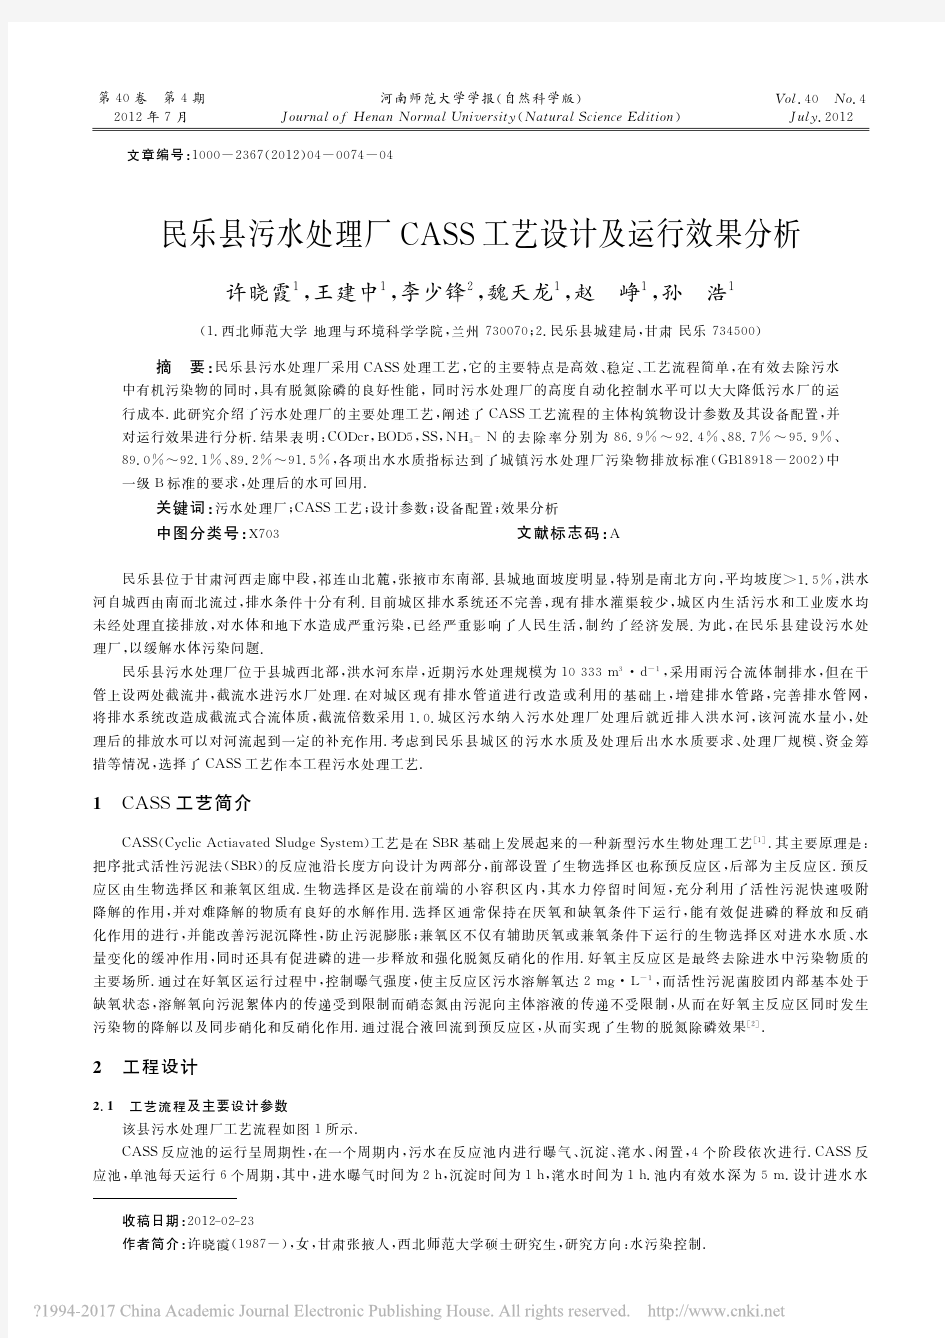 民乐县污水处理厂CASS工艺设计及运行效果分析_许晓霞